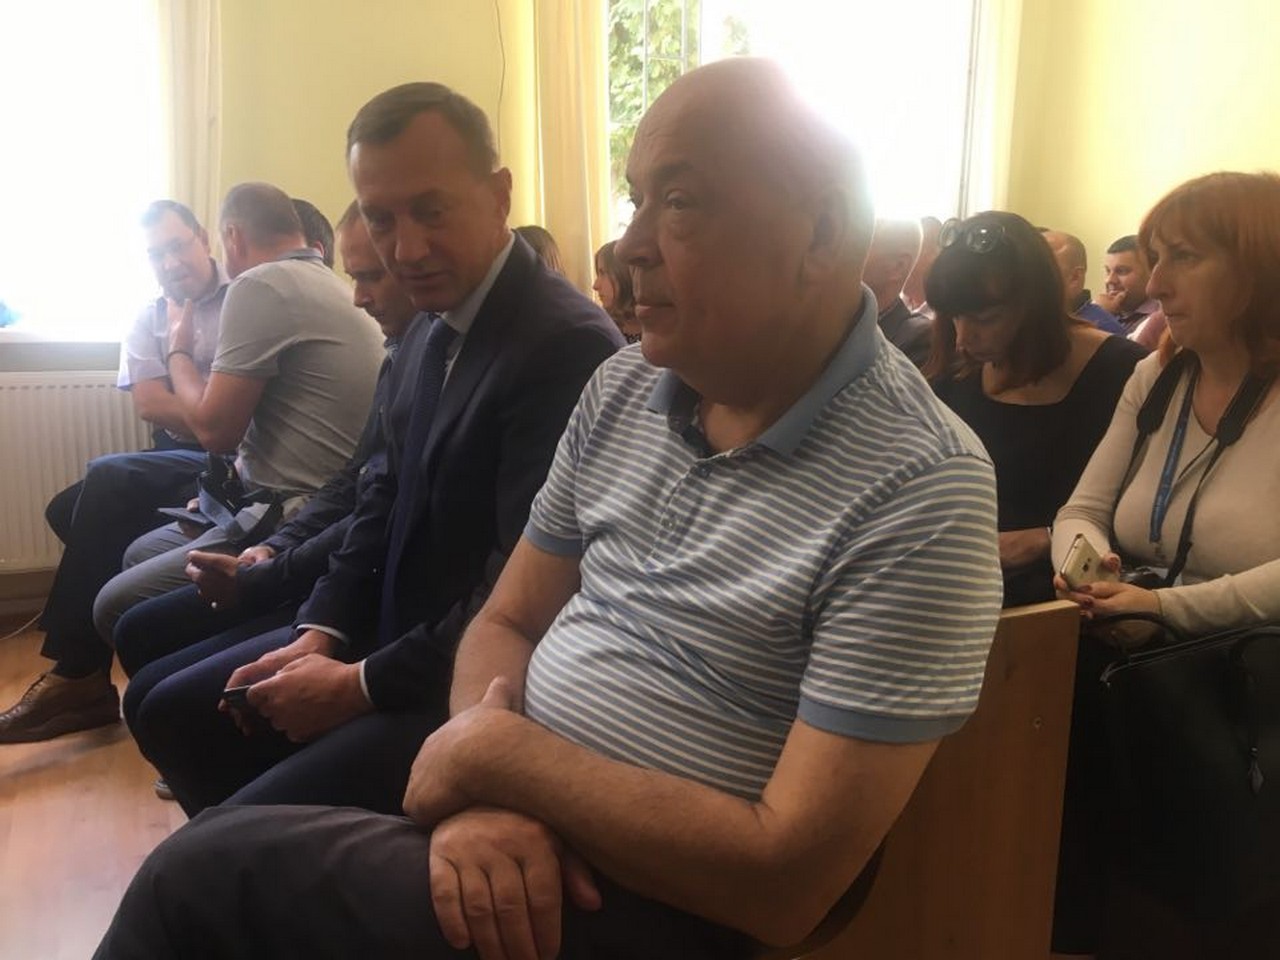 Сьогодні, 19 вересня, Ужгородський міськрайонний суд розглядає клопотання прокуратури про відсторонння міського голови Ужгорода Богдана Андріїва від посади.

